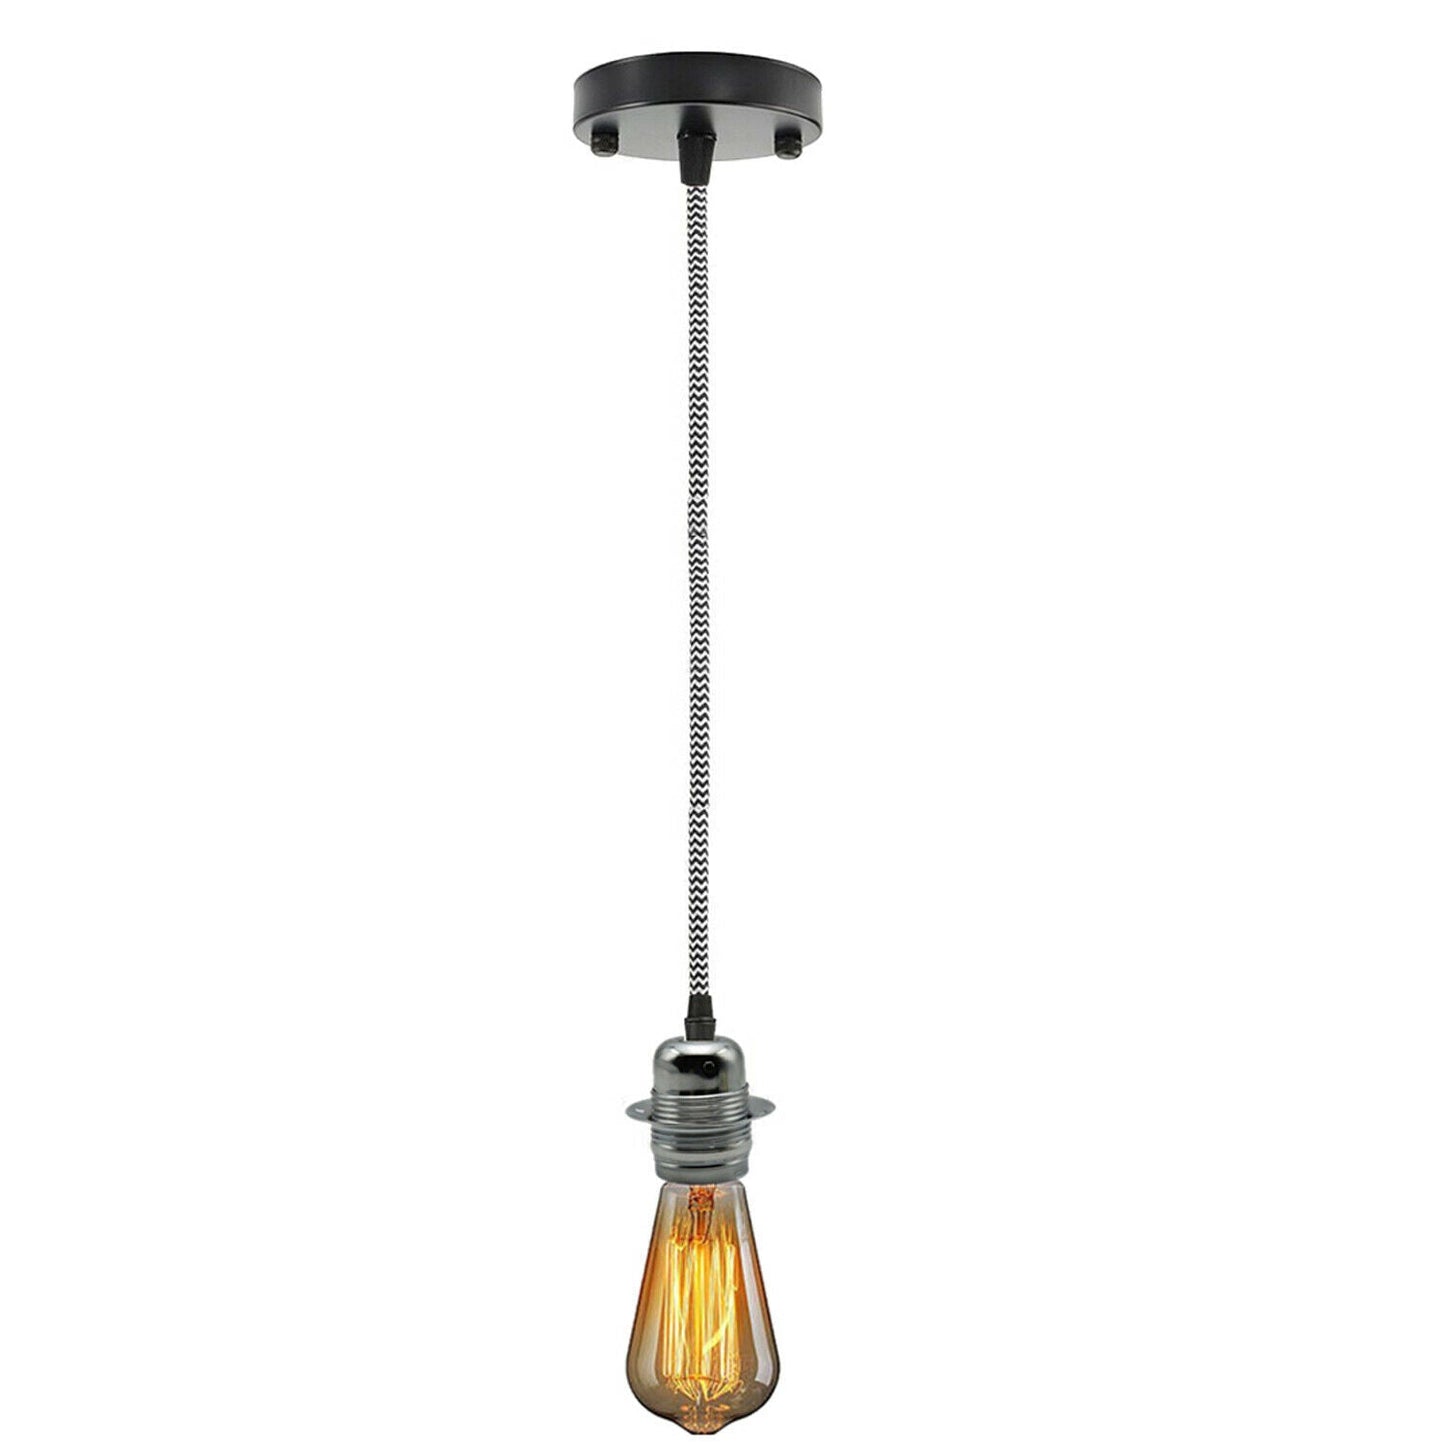 Brown Ceiling Rose Fabric Flex Hanging Pendant Light Lamp Holder FREE Bulb Fitting Lighting Kit~2334